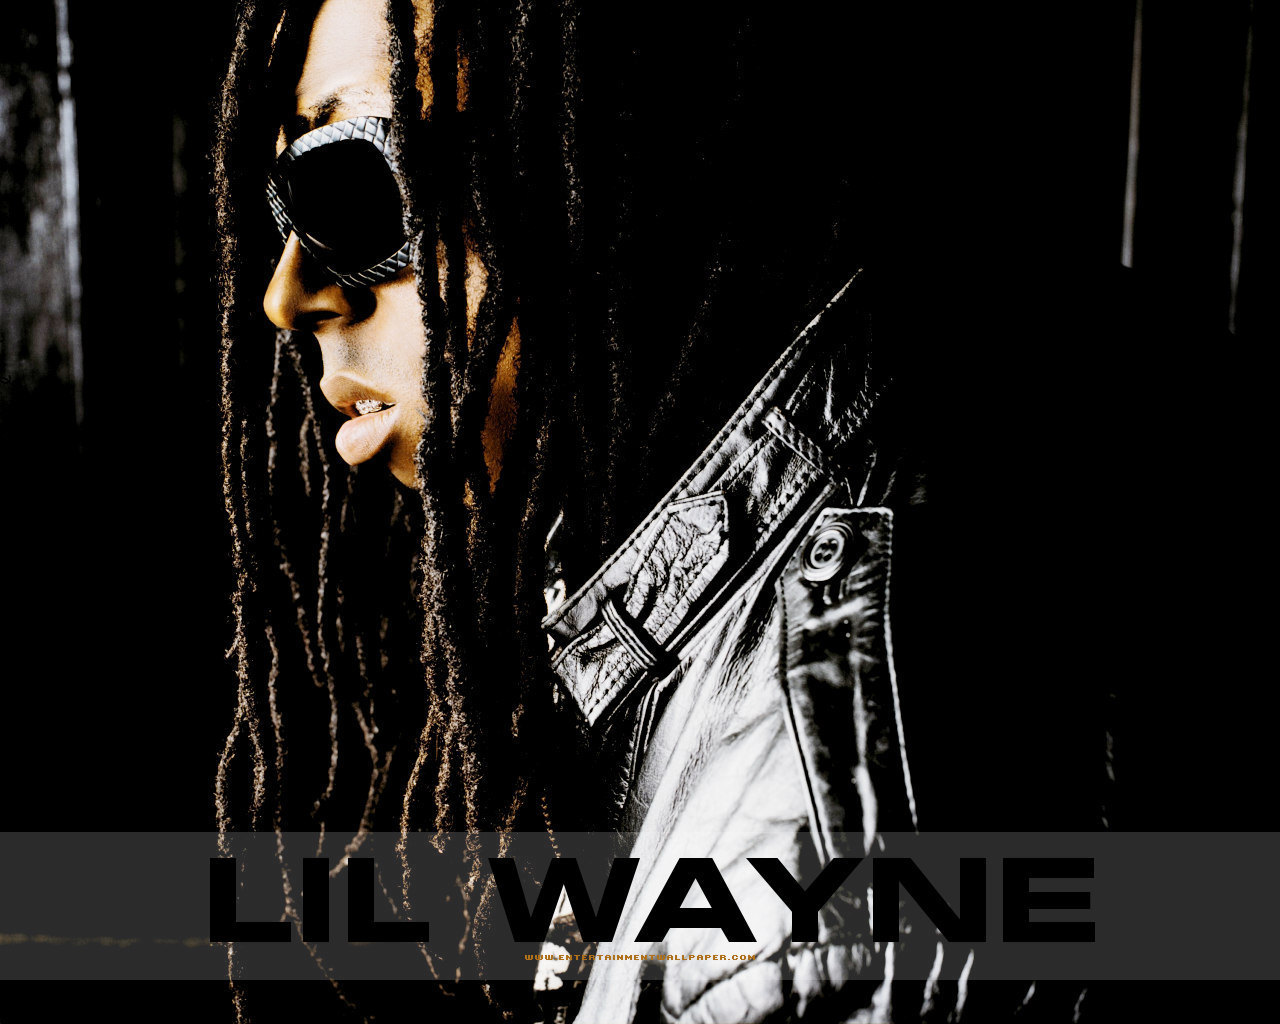 LiLWayne - Lil Wayne Wallpaper 6464983 - Fanpop